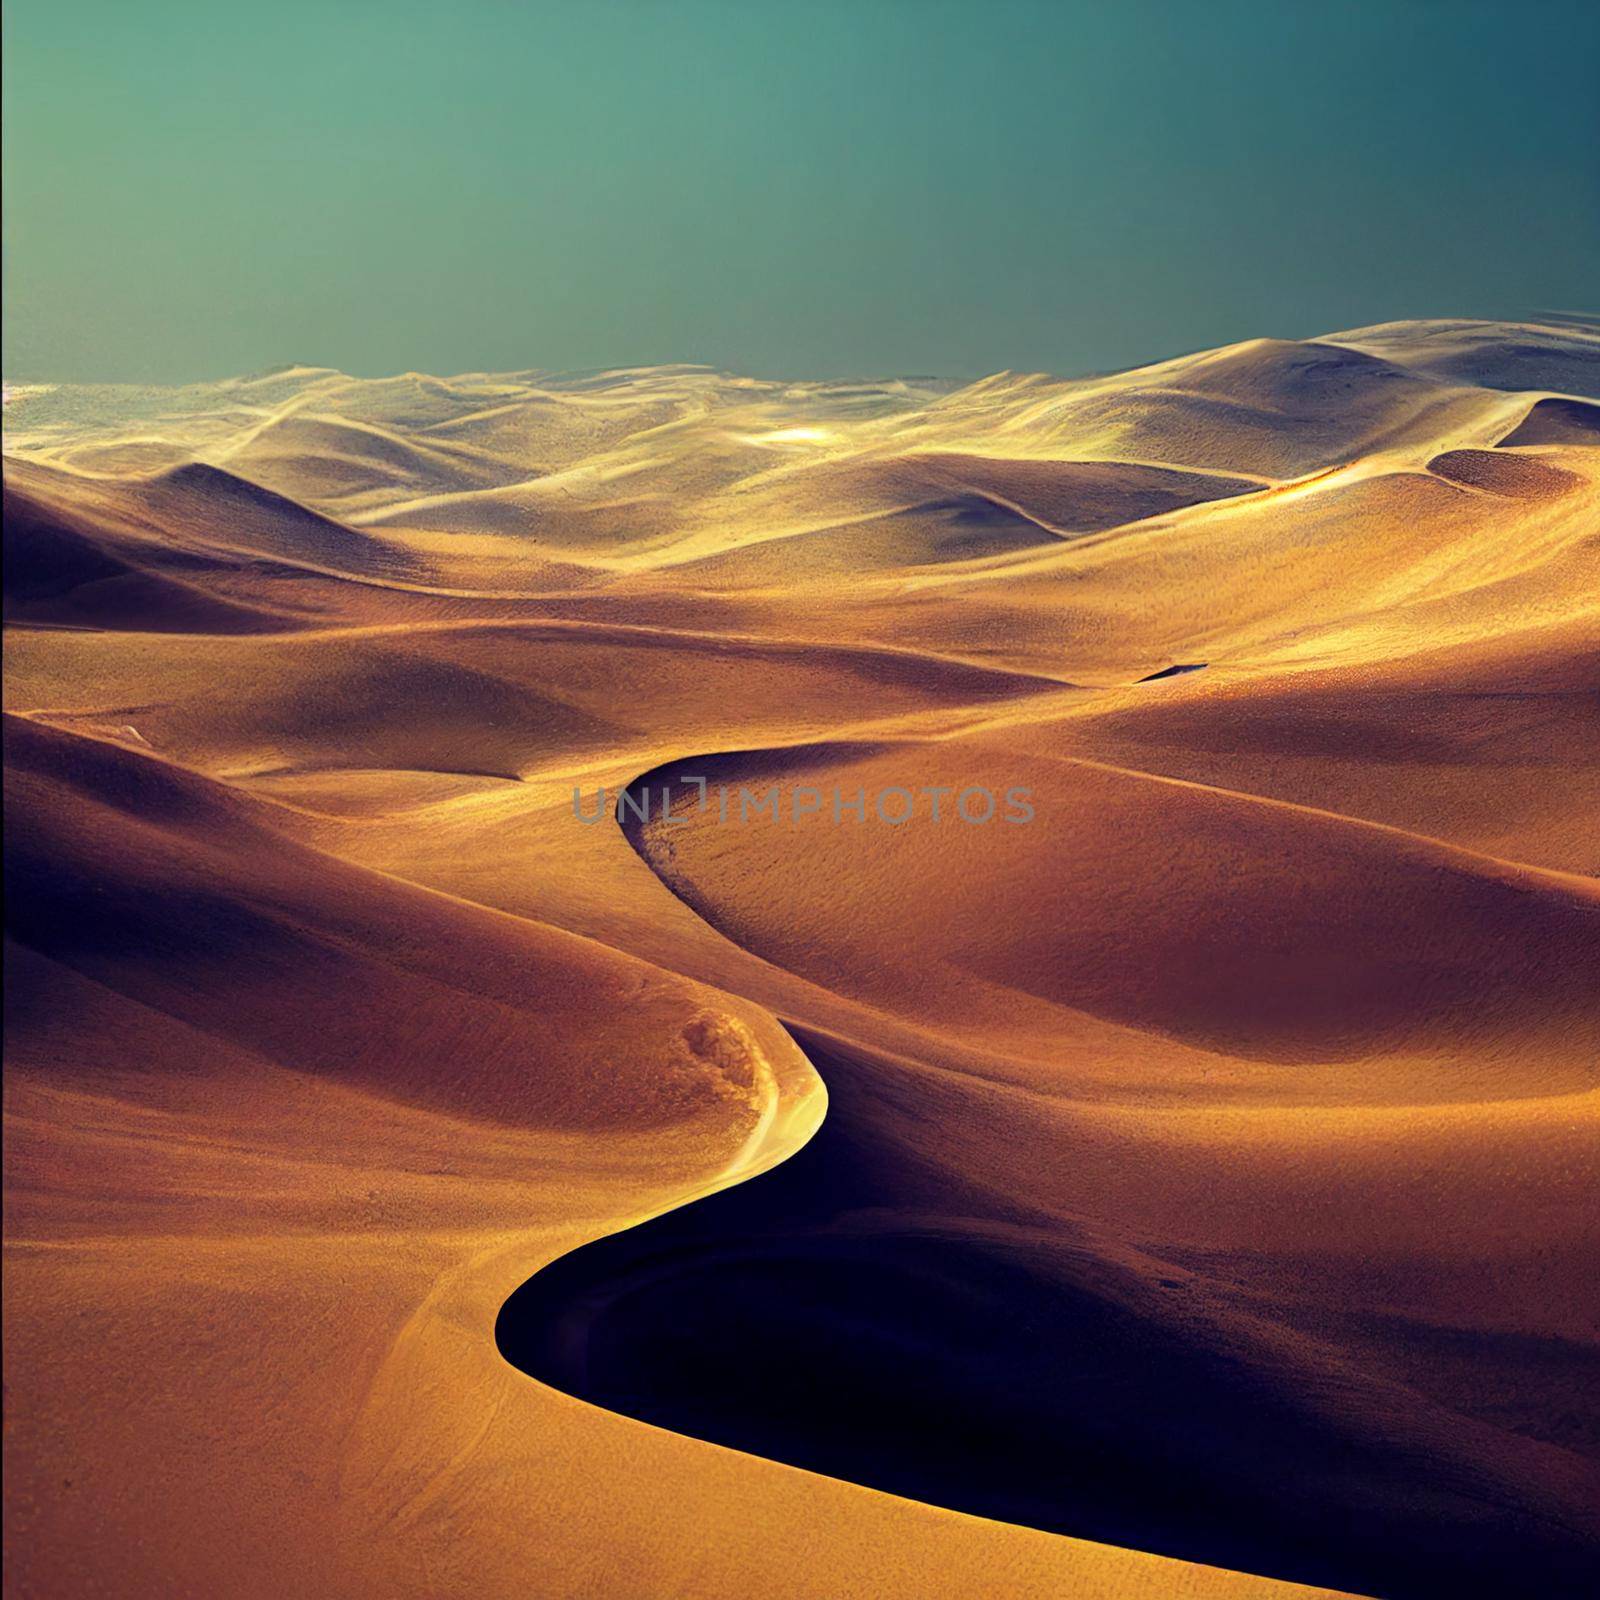 Sand dunes in the desert by NeuroSky